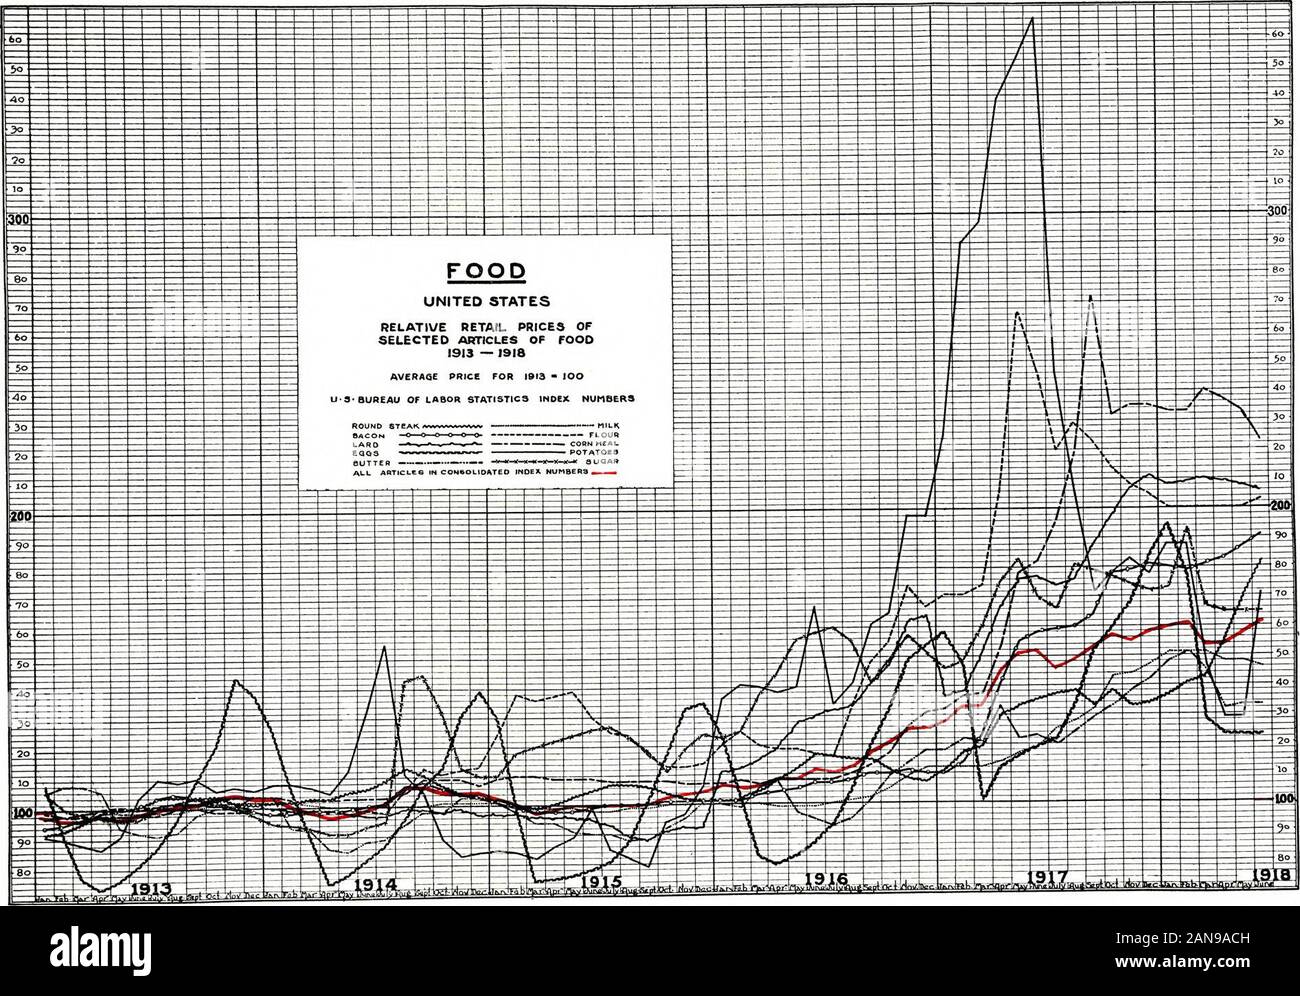 Kriegszeit änderungen in den Lebenshaltungskosten. . 913 wird als 100 und der Preise bei anderen periodsare in Bezug auf die durchschnittlichen geäußert. Der Preis für Kartoffeln beträchtlich gesunken im Jahr 1915 im Vergleich zu 1914, und die meisten anderen Preise fielen einige - was, aber die durchschnittlichen Preise für Zucker, Mehl und Getreide mealwere höher. 1916 jeder Artikel zeigte eine upwardmovement der Schwung, die sich in nächsten Jahr fortgesetzt. In der Tat, während die Steigerungsrate der bis Juni 1918, für die einzelnen Artikel unterschiedlich, keine in der Liste savepotatoes einen niedrigeren Preis, als es die Bohrung im Jahre 1916 zeigte. Es scheint, dass einer der am meisten Stockfoto